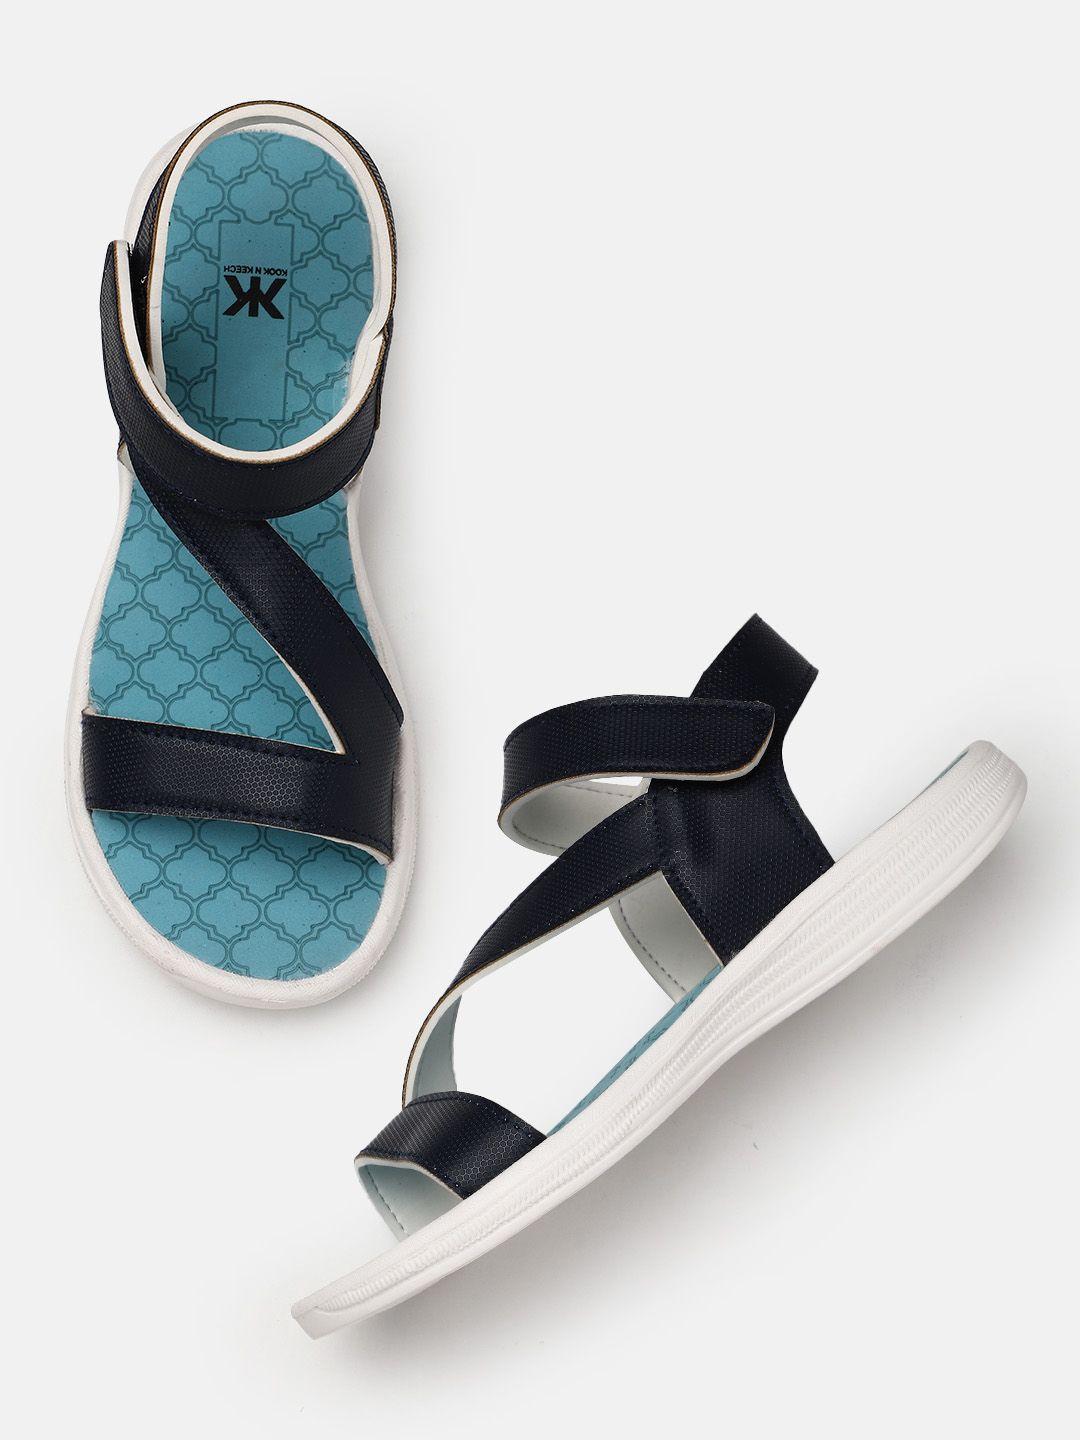 kook-n-keech-women-sports-sandals